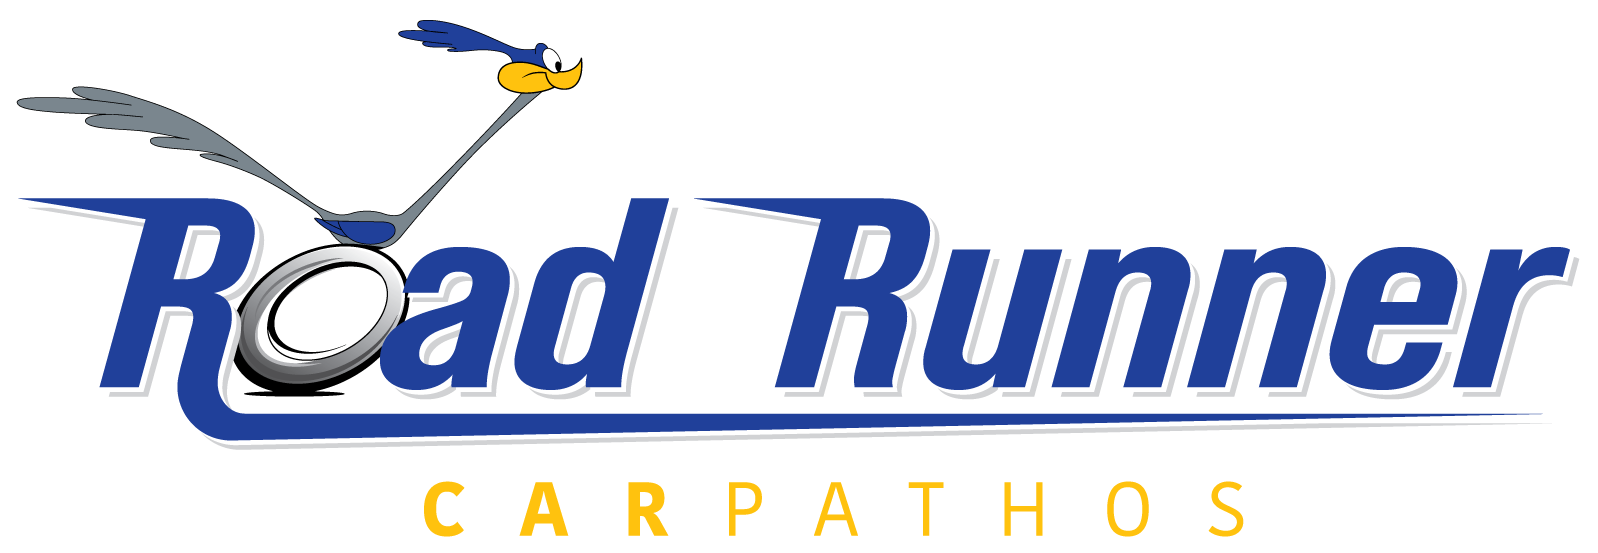 Road Runner Karpathos